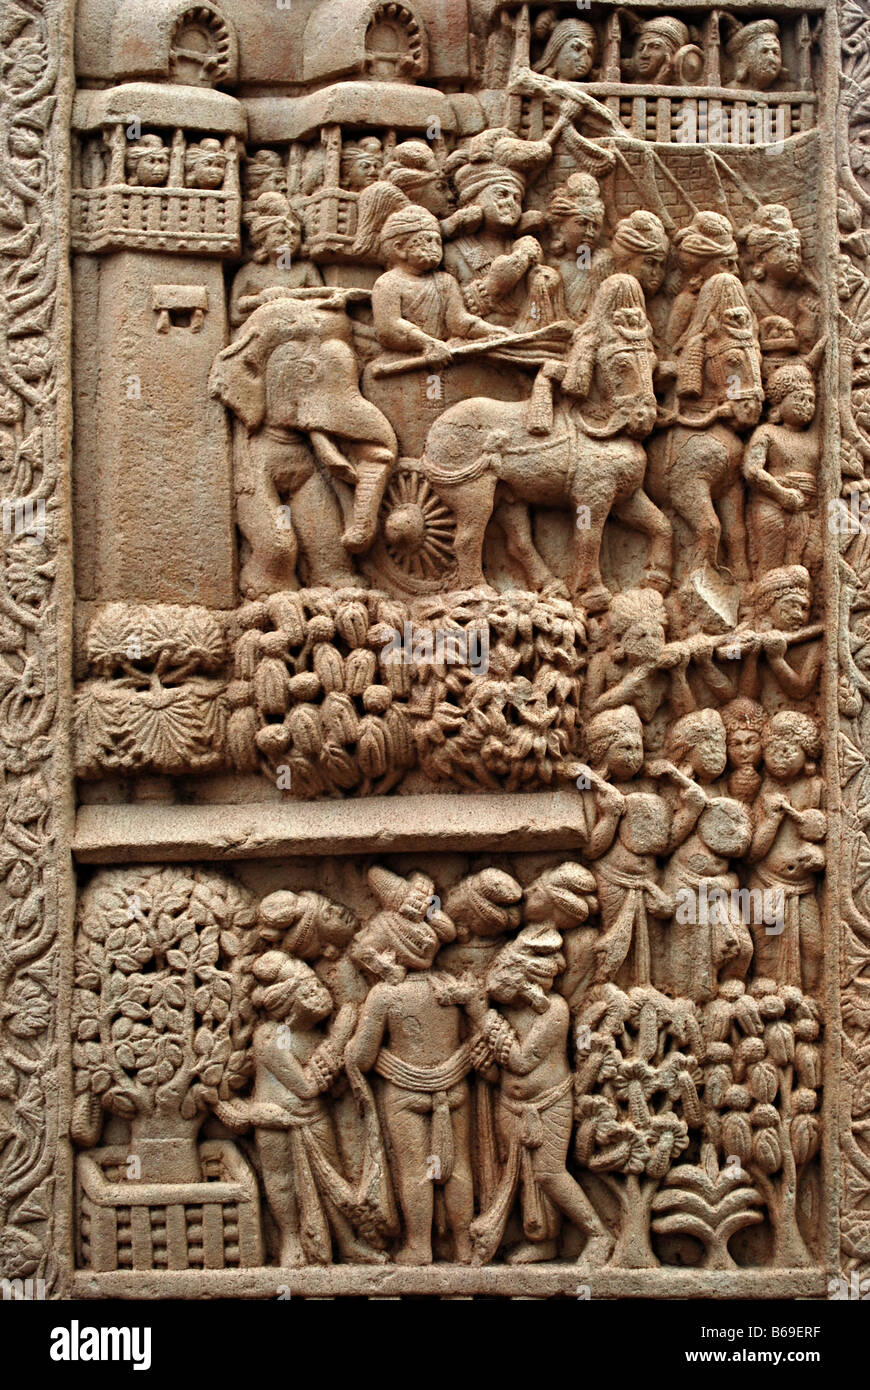 Los detalles esculpidos representando la Estupa Puya, que incluye aves, animales de la puya, Sanchi, Madhya Pradesh, India. Foto de stock